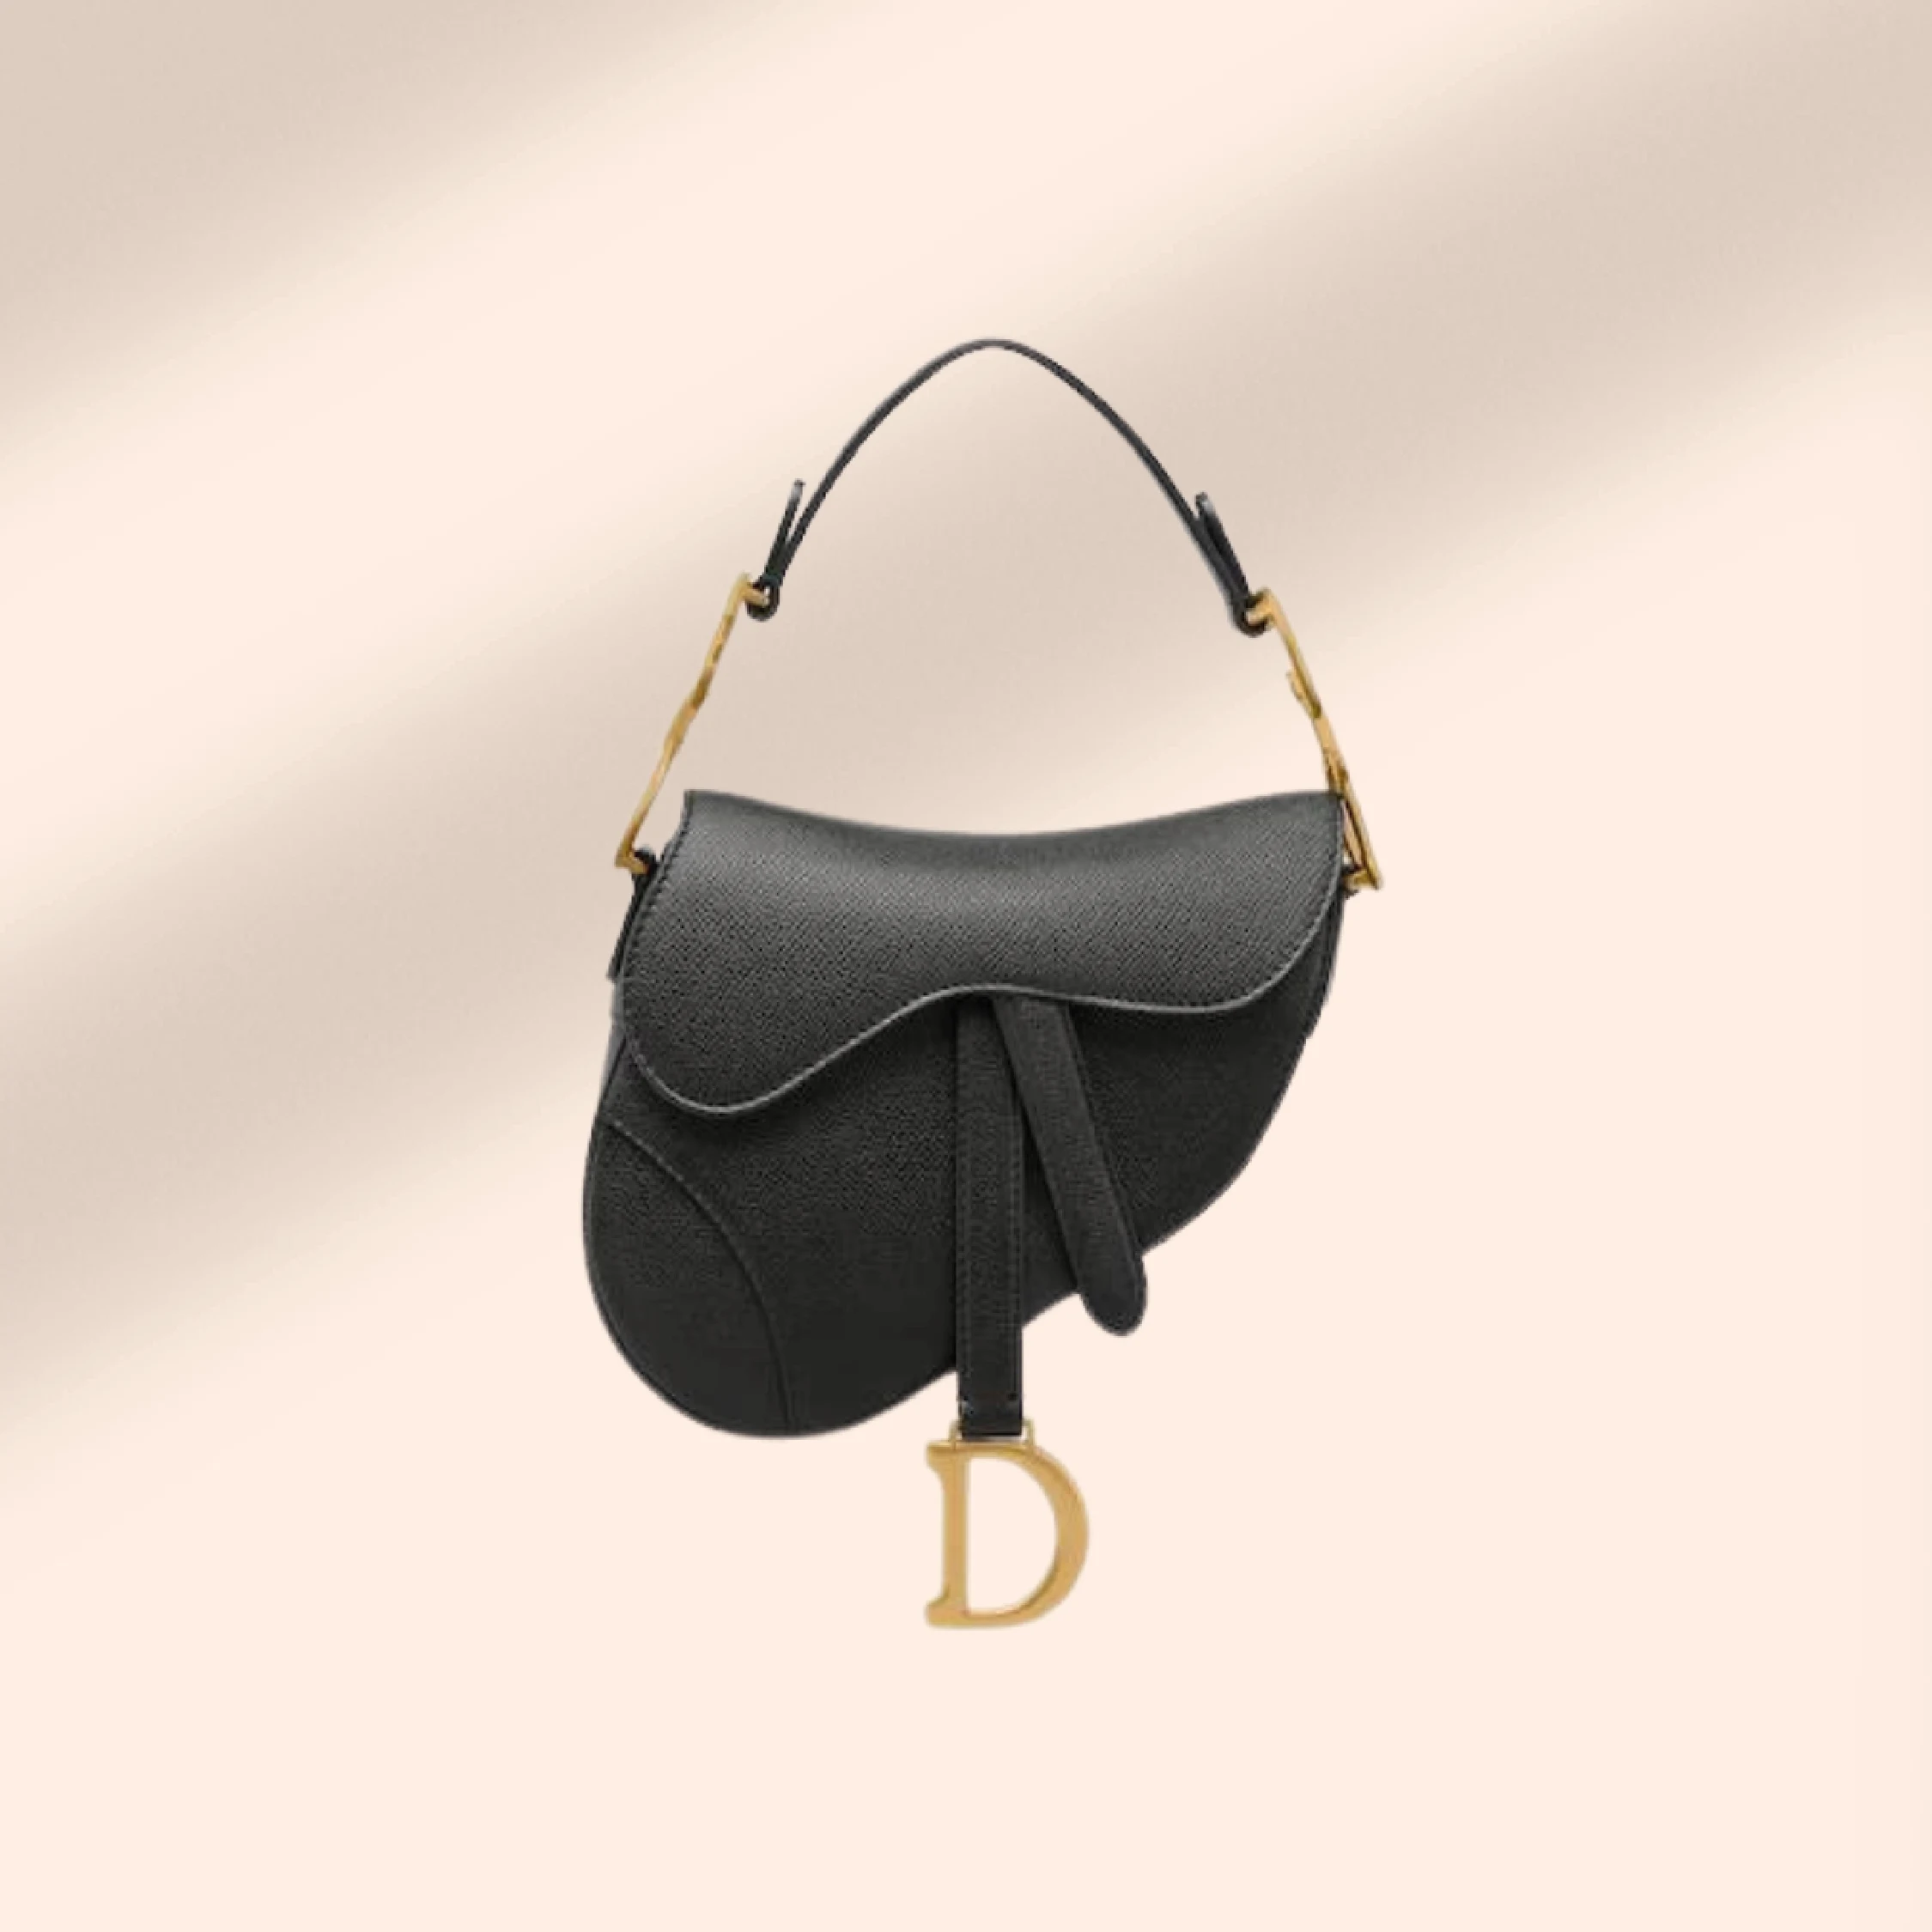 Dior Mini Saddle Bag for hire.